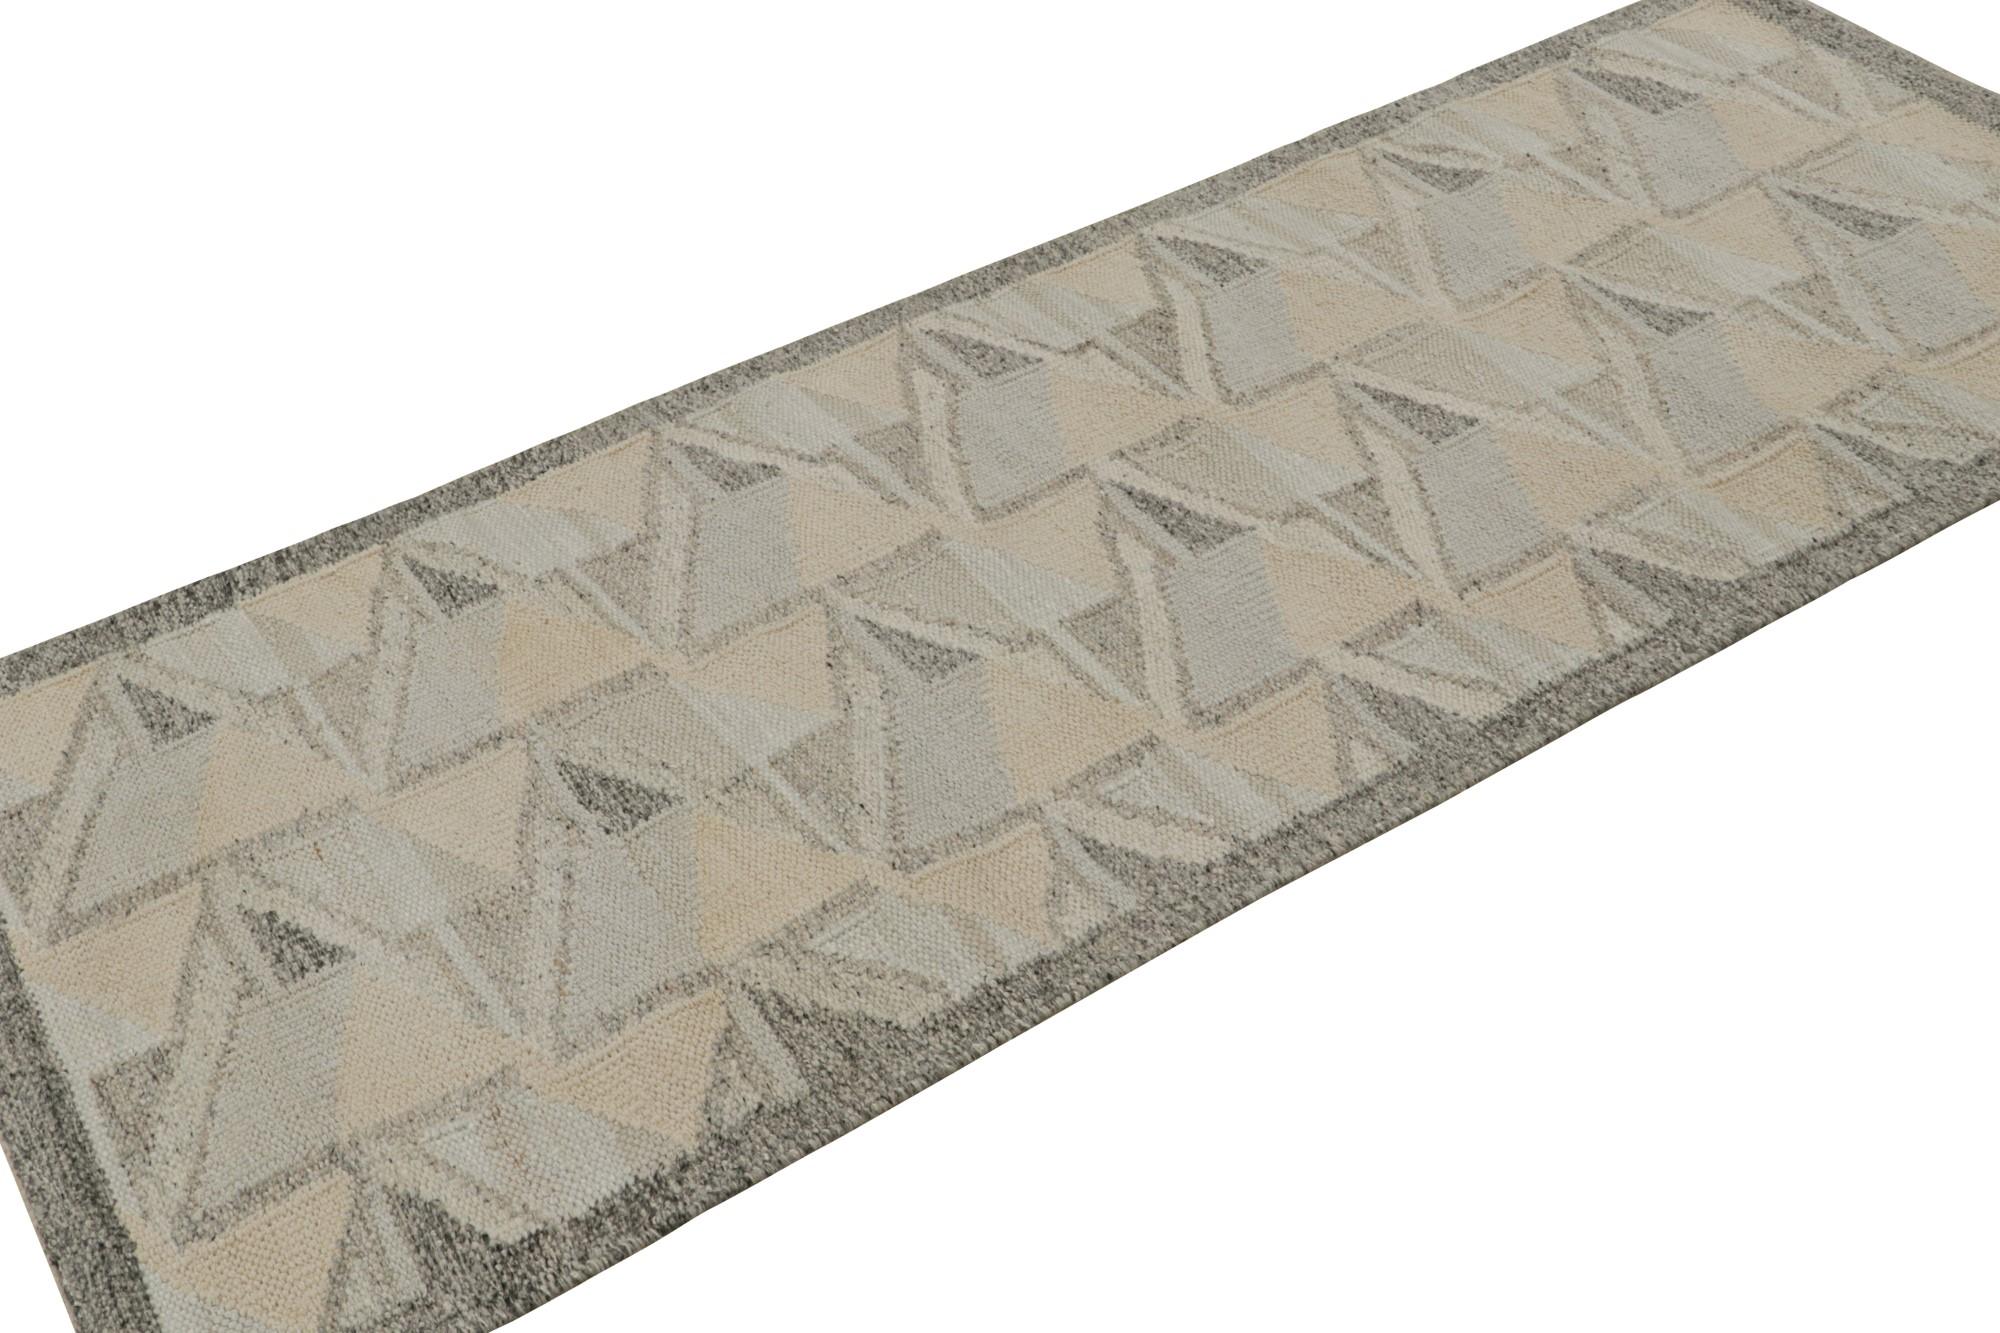 Ce tapis 3×8 est un kilim de style suédois de la collection de tapis scandinaves de Rug & Kilim. Tissé à la main en laine et fils naturels non teints, ce tissage plat s'inspire des tapis Rollakan et Rya vintage de style déco suédois. 

Sur le Design